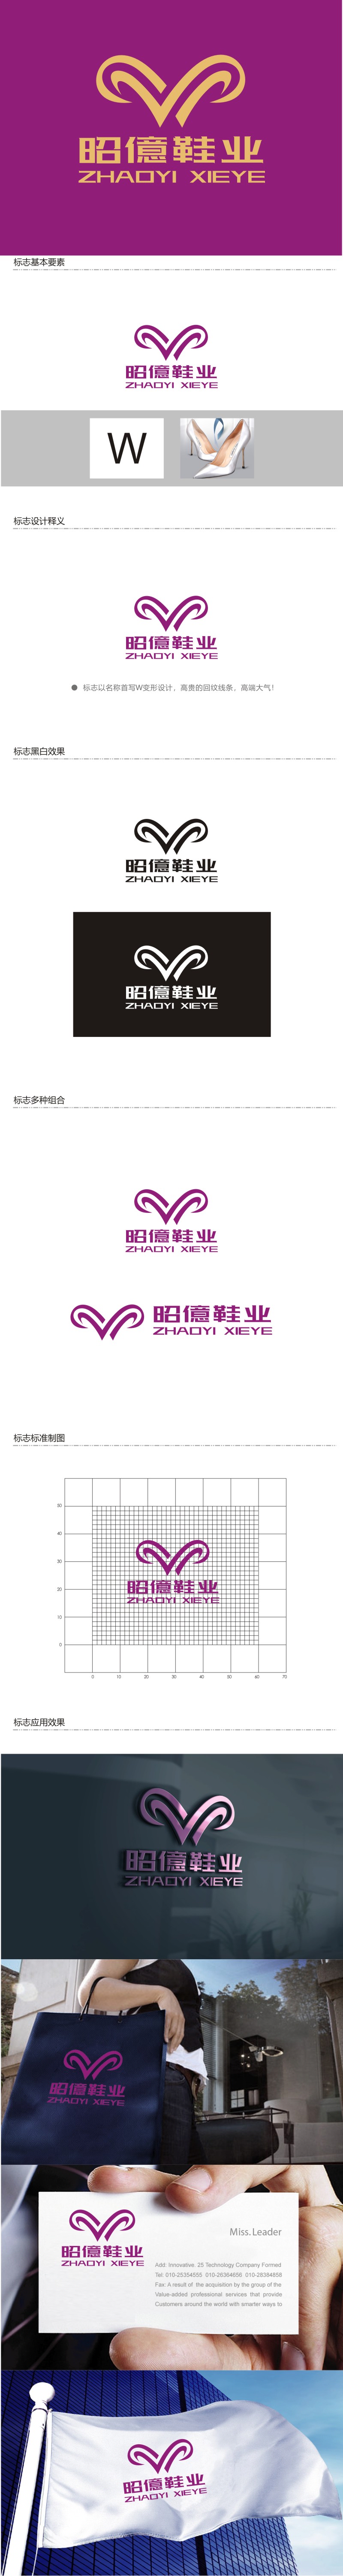 谭家强的昭億鞋业logo设计